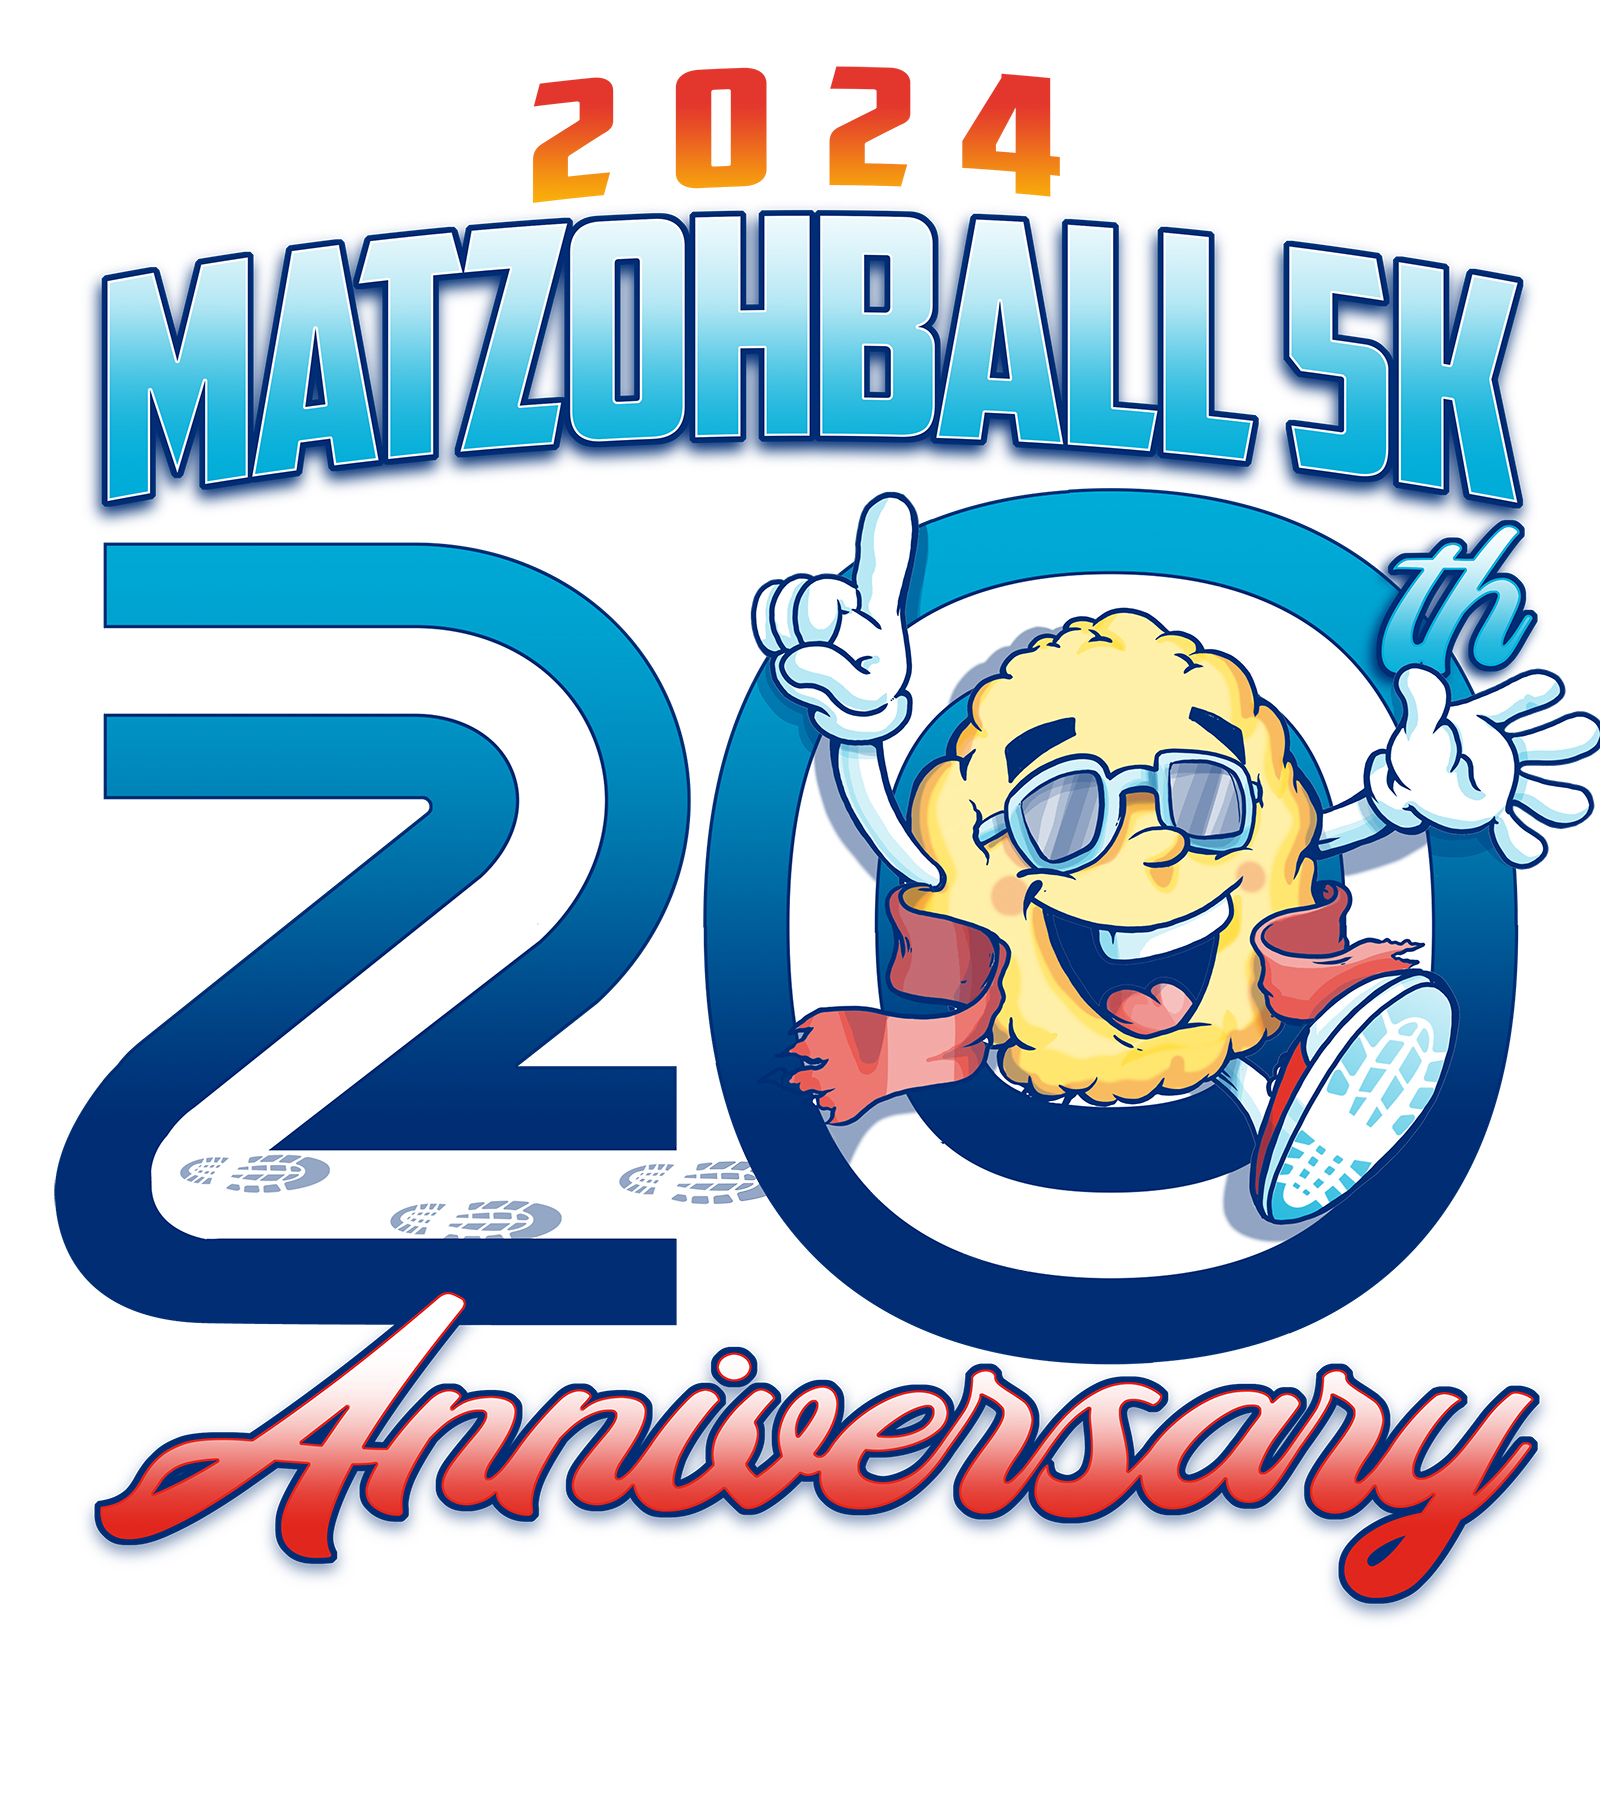 Matzohball 5K & 1 Mile Fun Run logo on RaceRaves